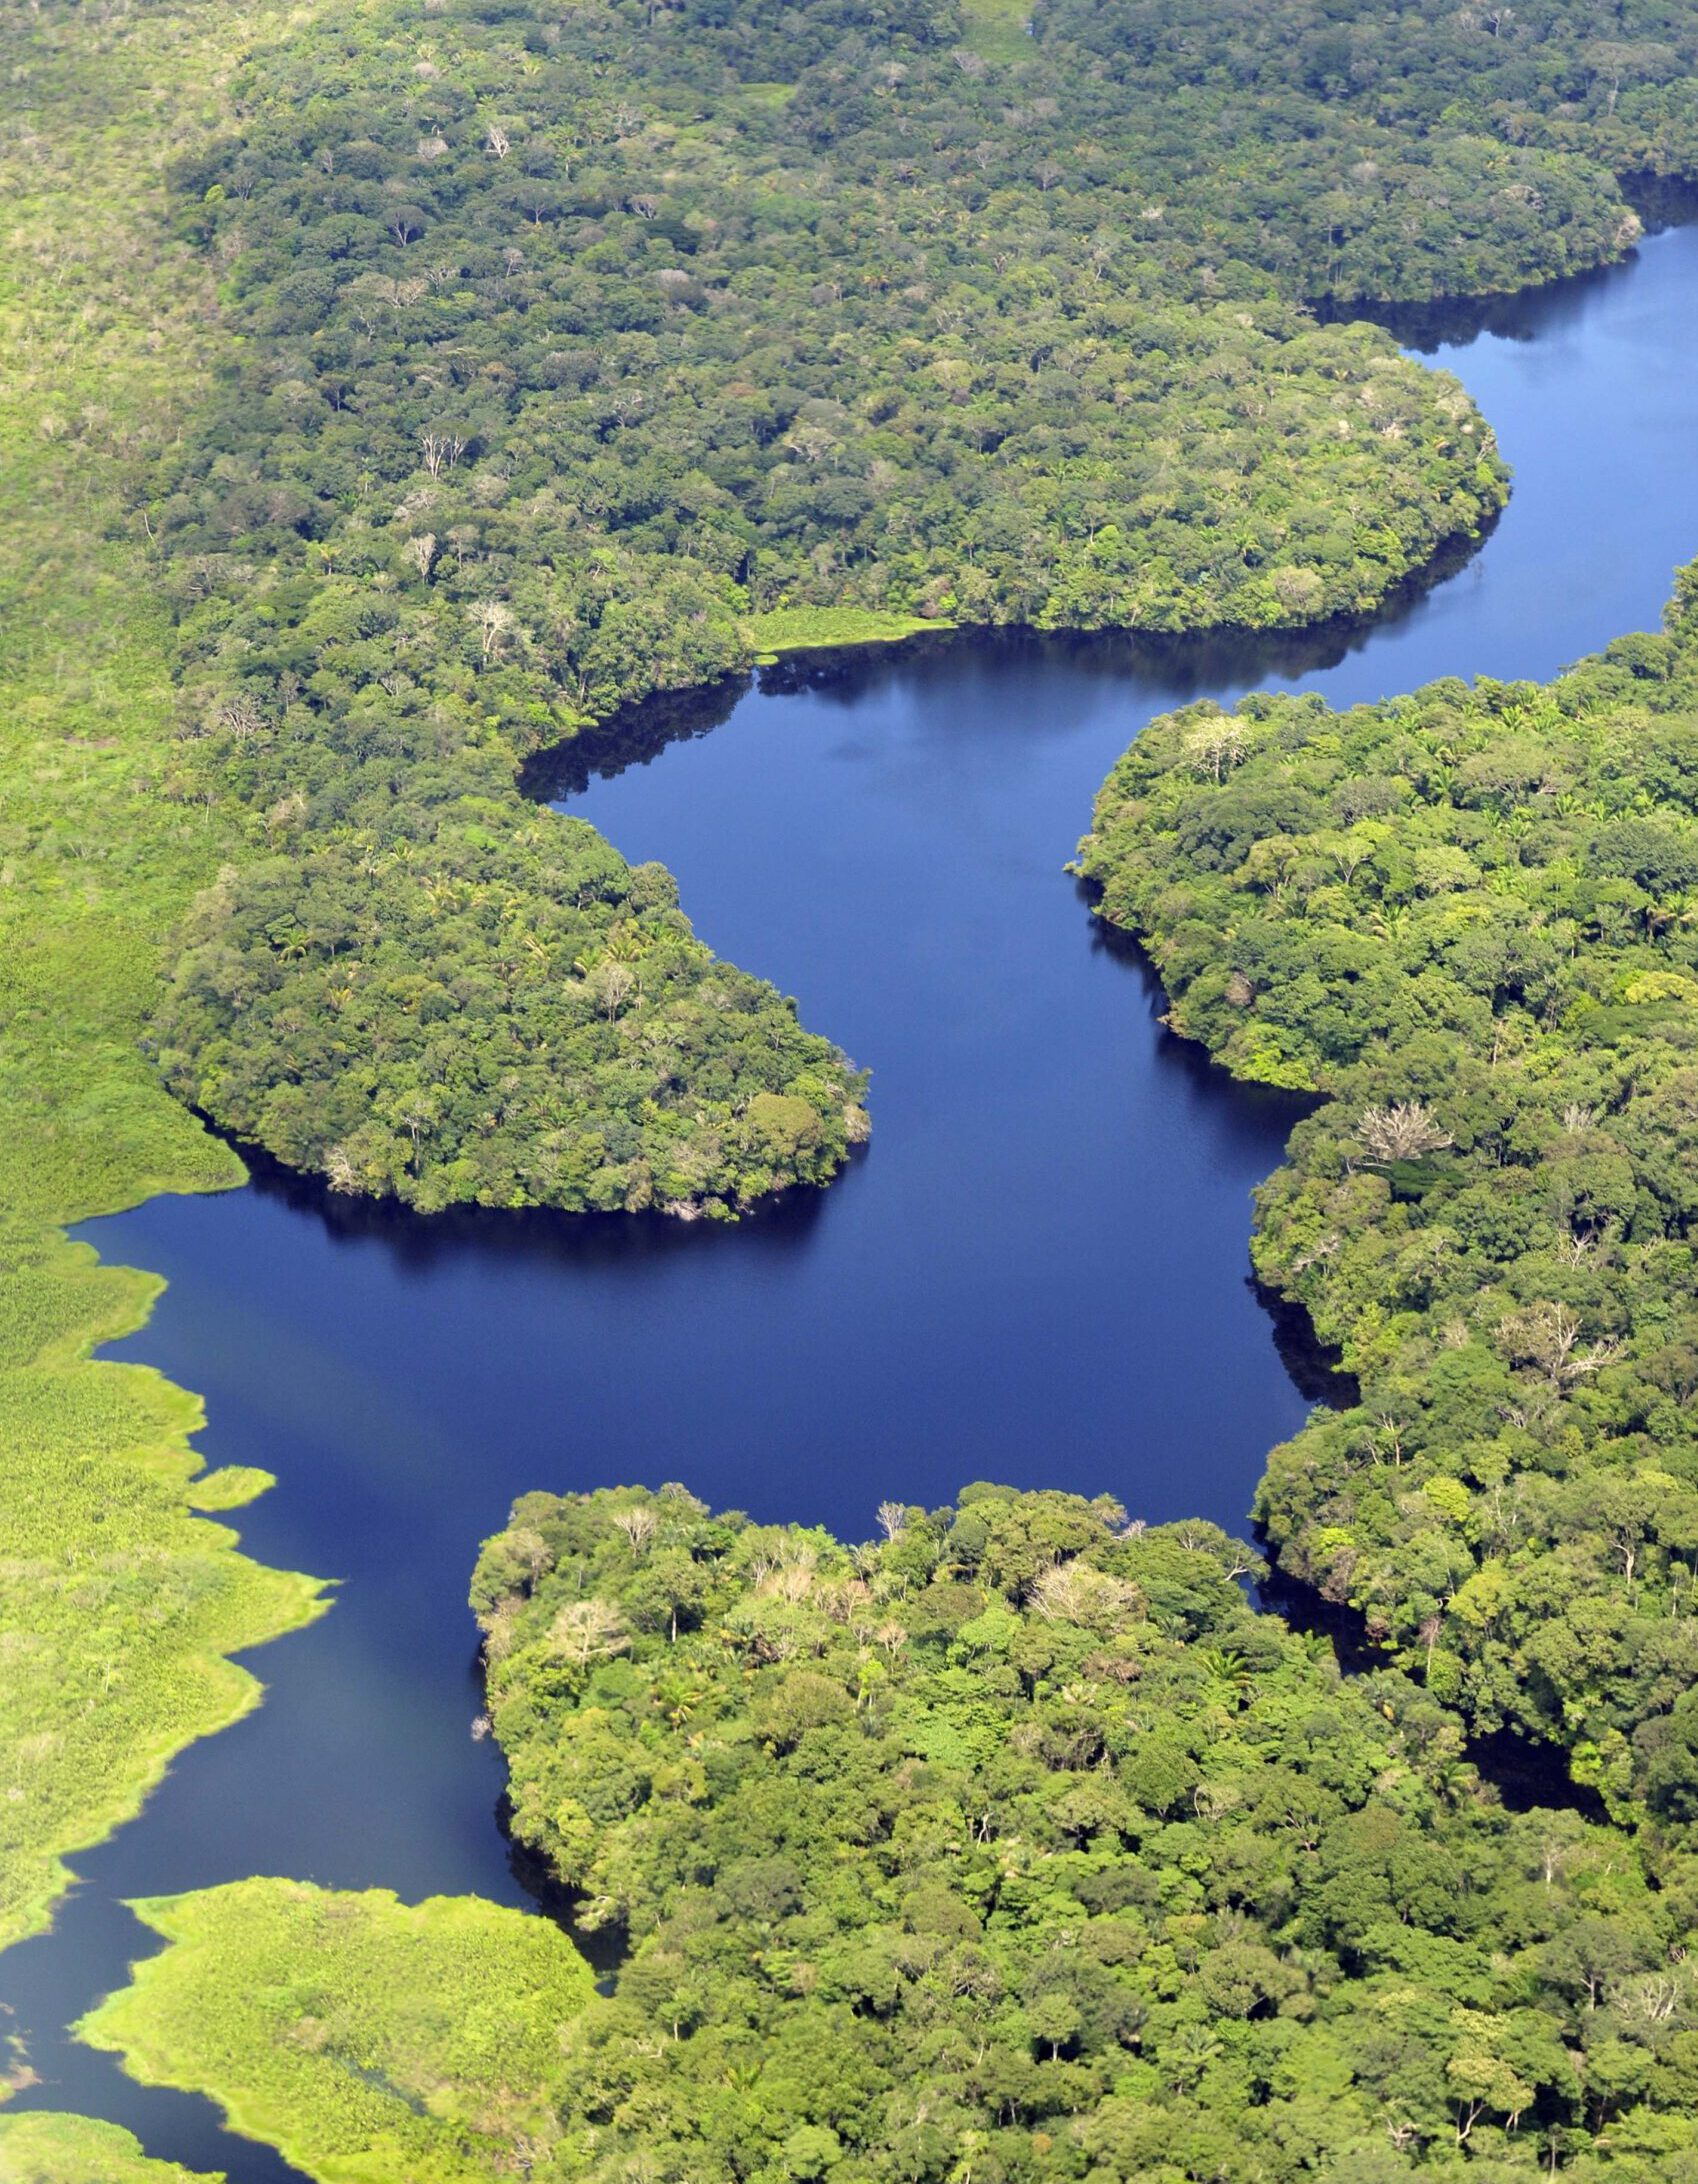 Amazon Rainforest, near Manaus